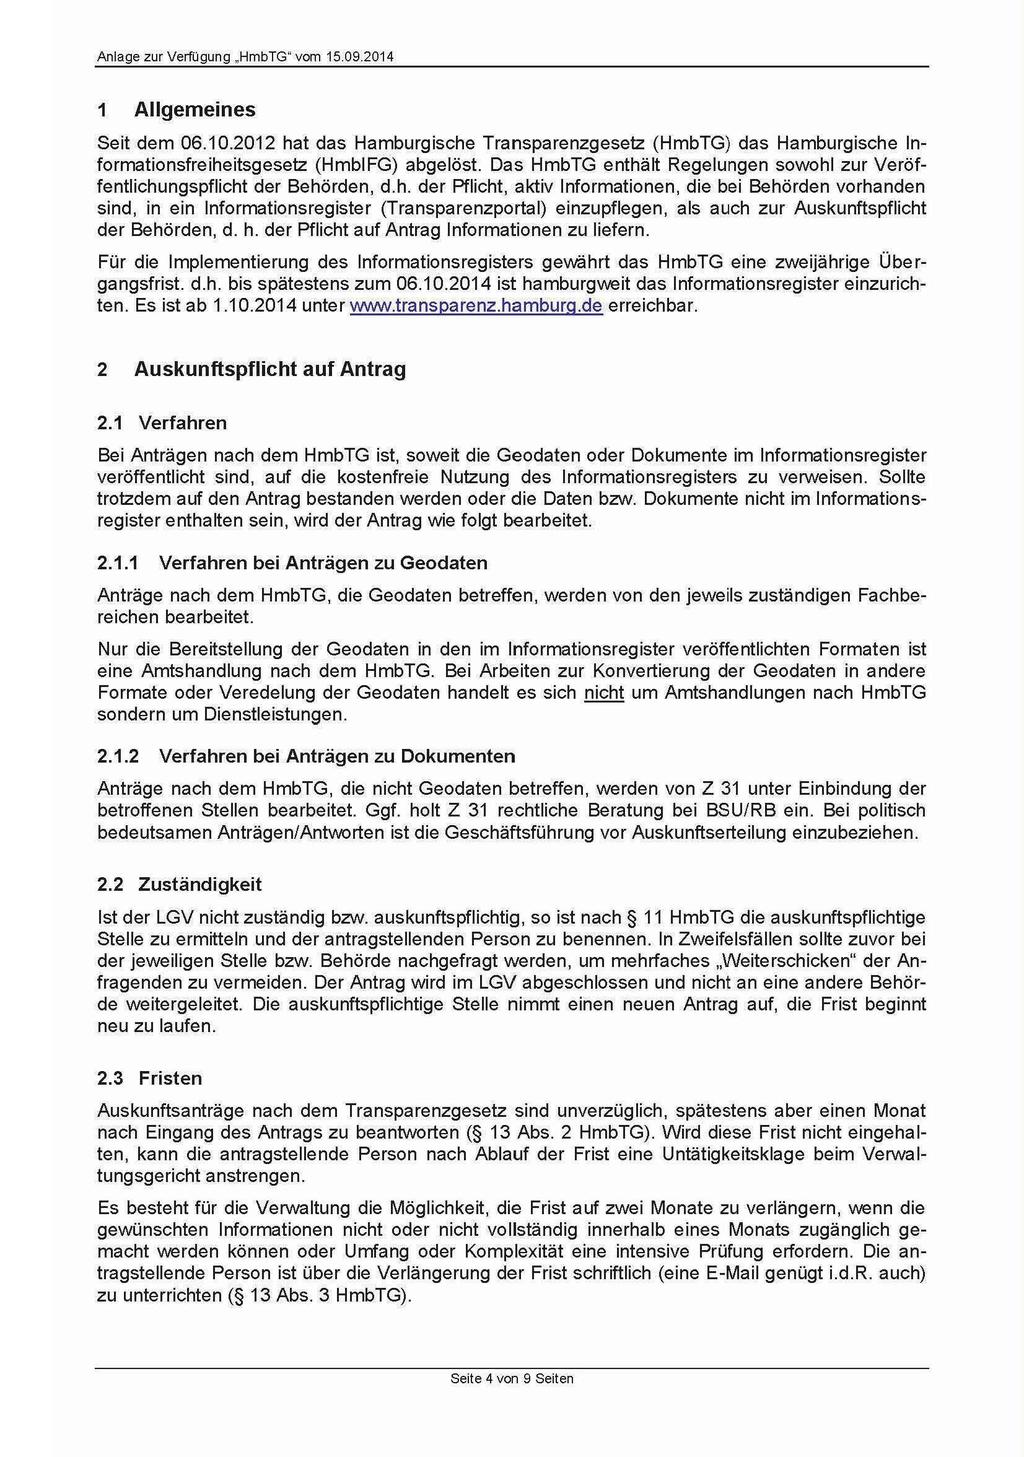 1 Allgemeines Seit dem 06.10.2012 hat das Hamburgische Transparenzgesetz (HmbTG) das Hamburgische Informationsfreiheitsgesetz (HmblFG) abgelöst.